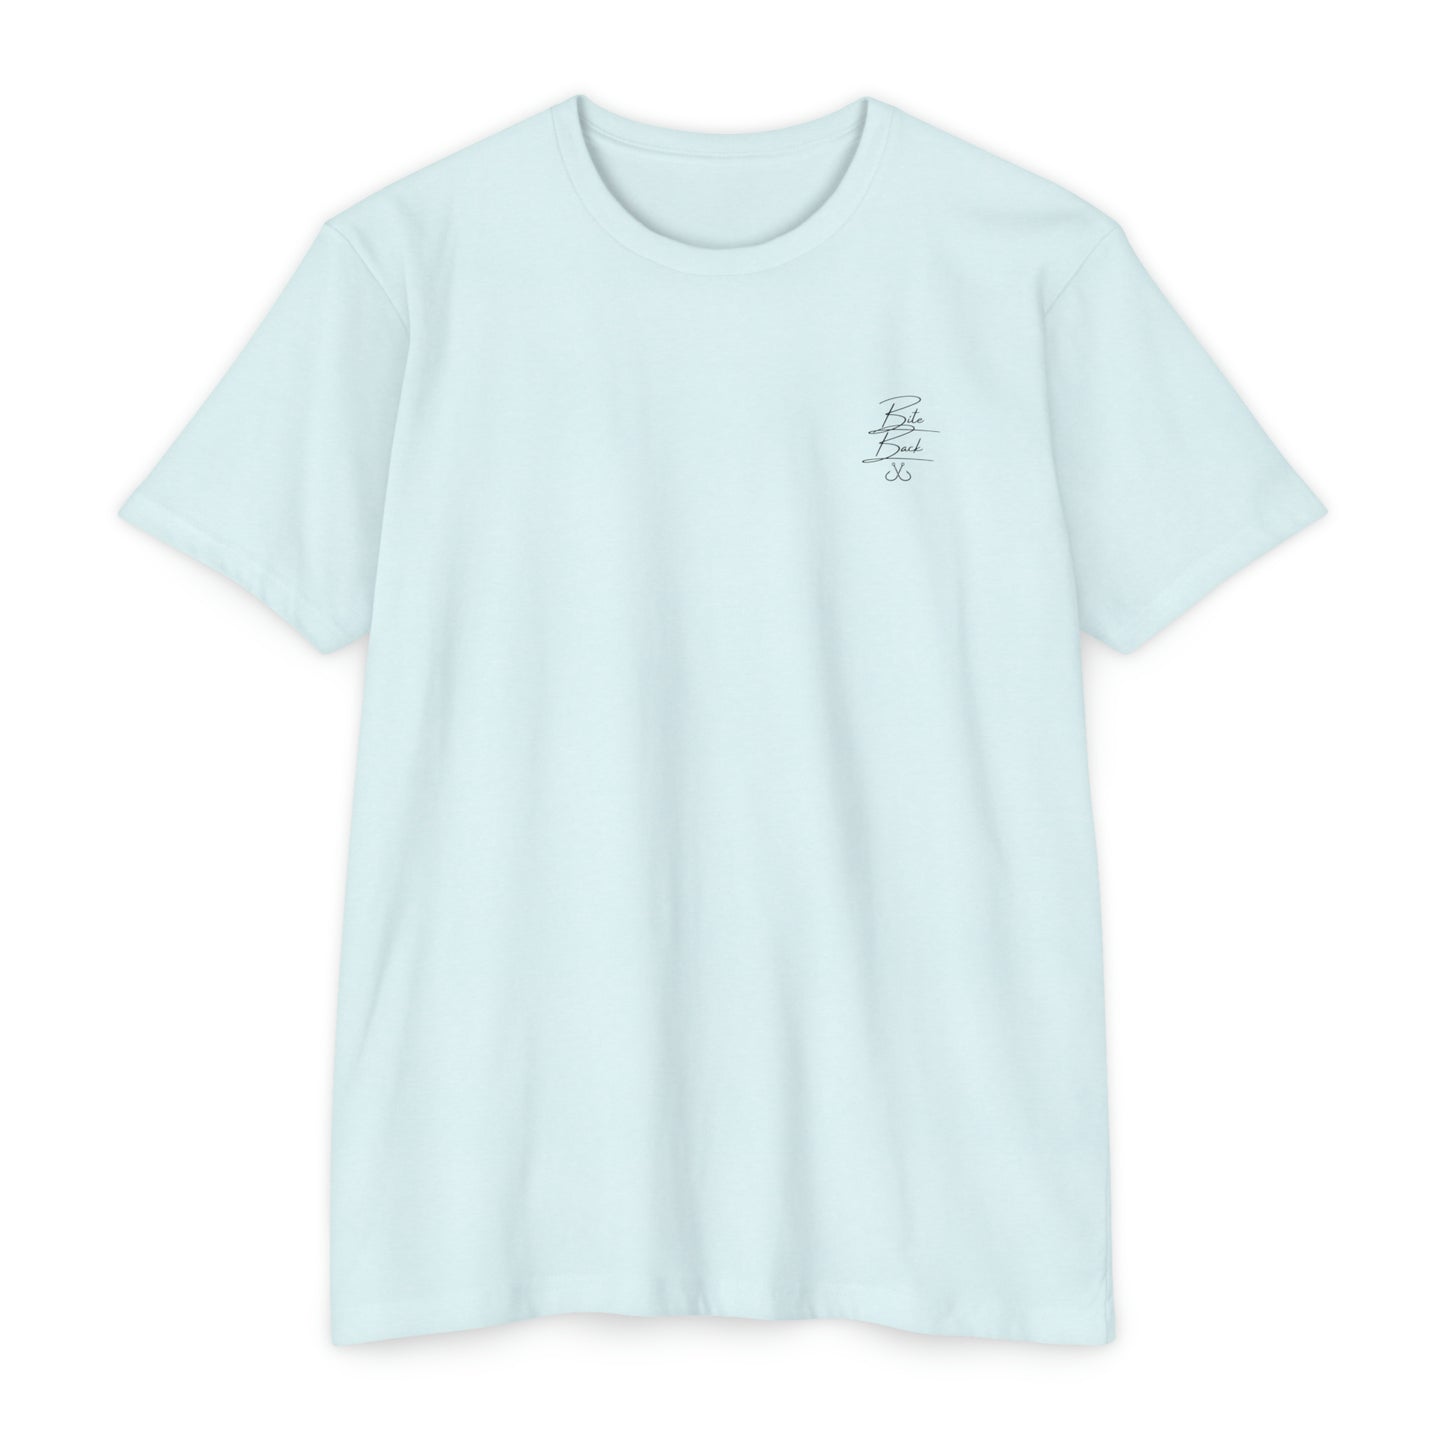 Shark Fin T-shirt